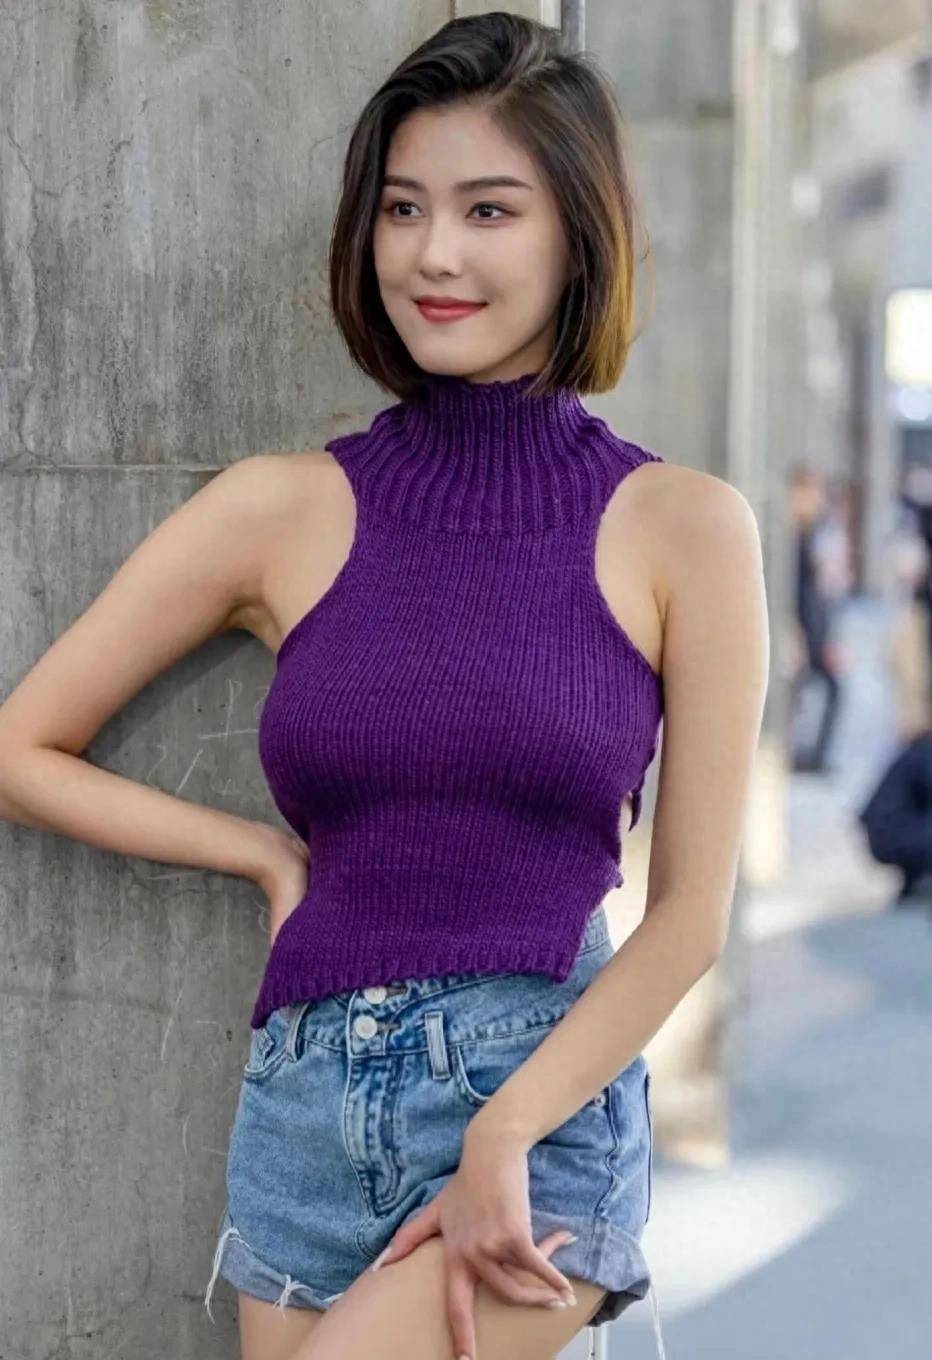 中国身高185女模特图片